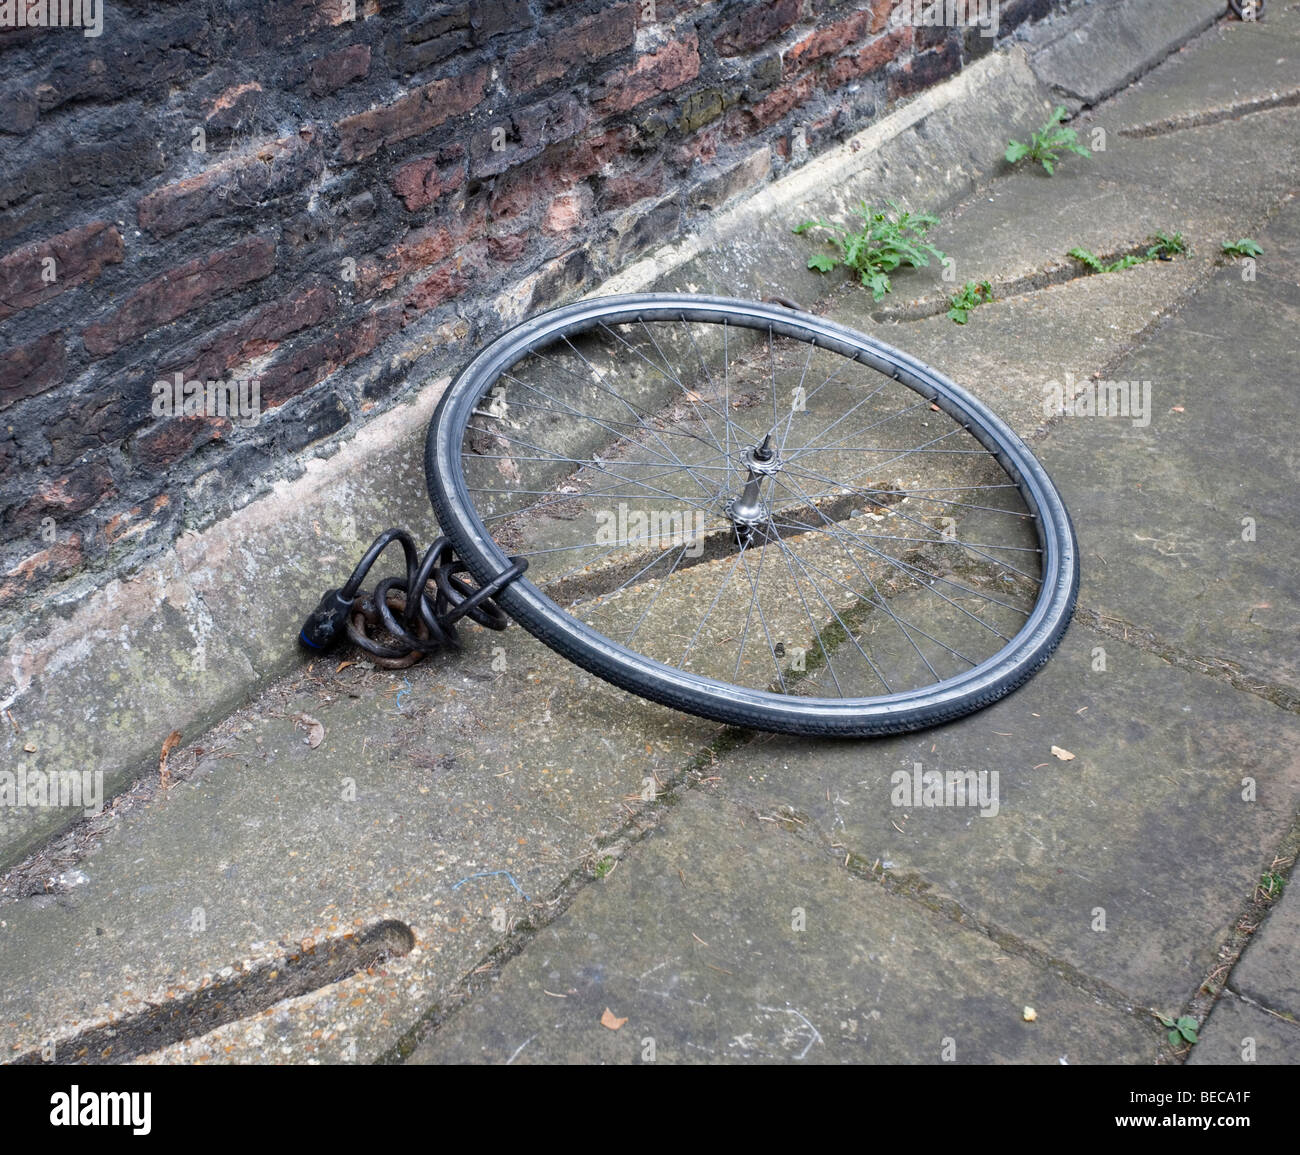 D'une roue de vélo et l'écluse, le reste de la moto avait été volée, Cambridge, Cambridgeshire, Royaume-Uni. Banque D'Images